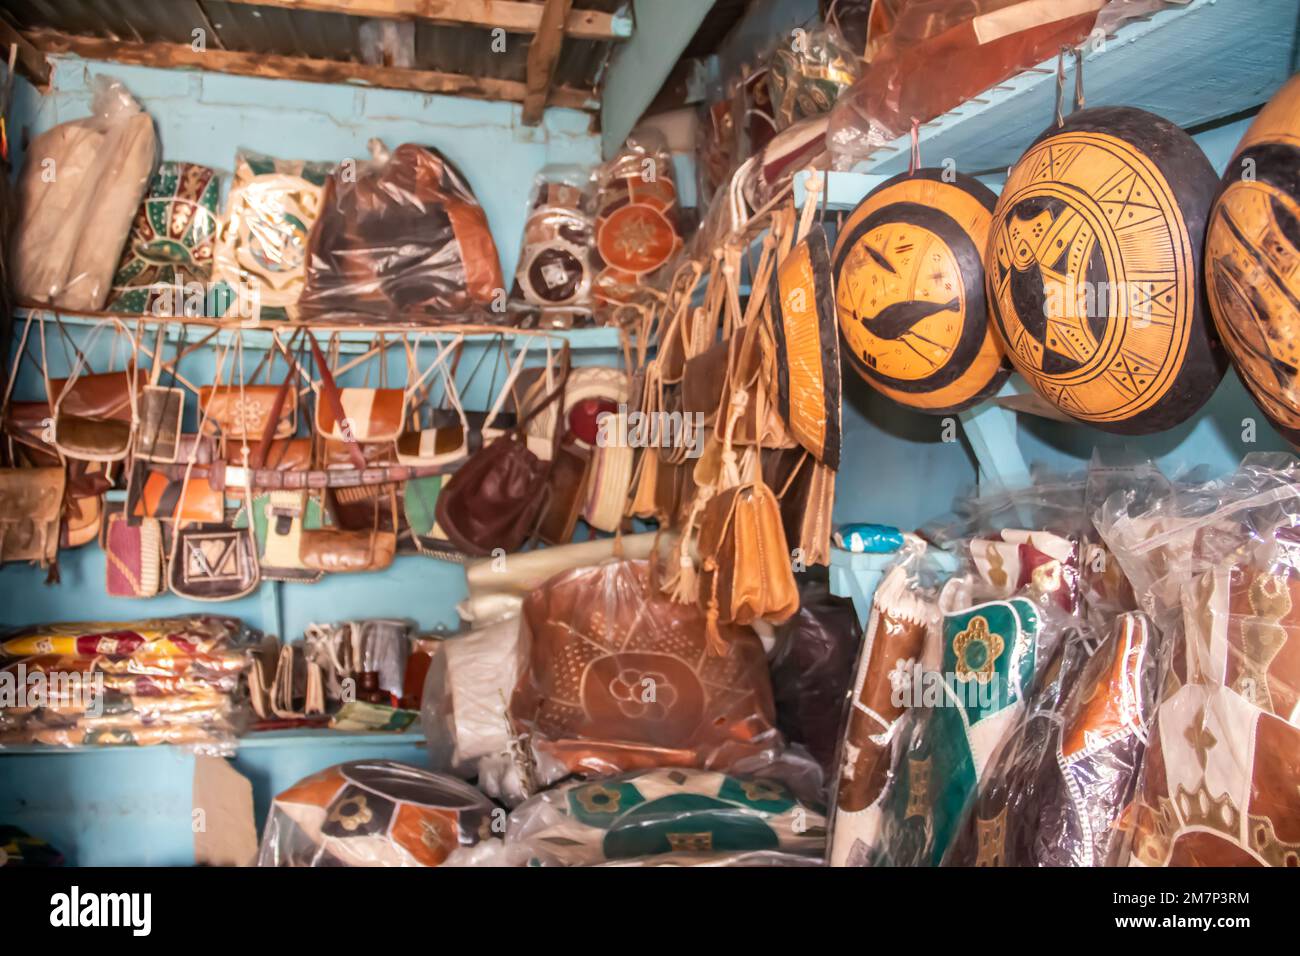 Boutique de souvenirs locale africaine avec colliers colorés, sacs de leader, traditionnellement fait à la main et exposé sur des étagères de petit marché Banque D'Images